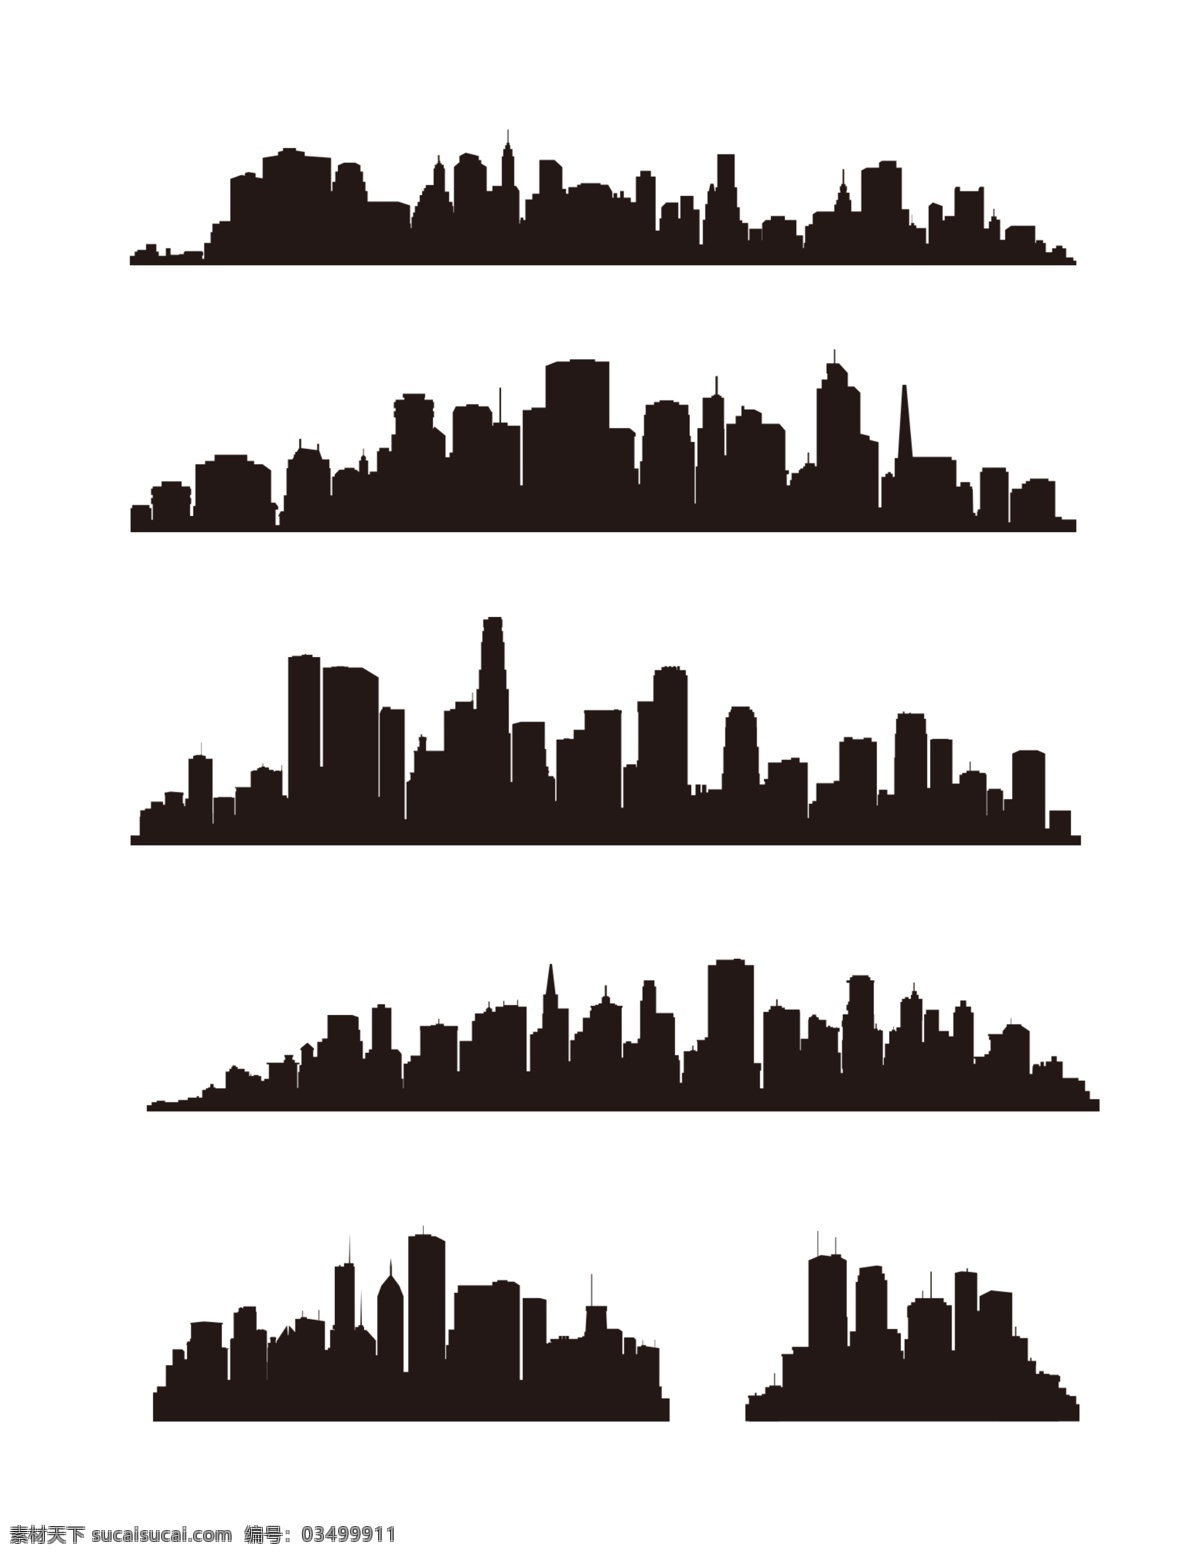 建筑剪影 城市 剪影 建筑图标 功能性建筑 城市建筑 建筑素材 黑白 高楼大厦